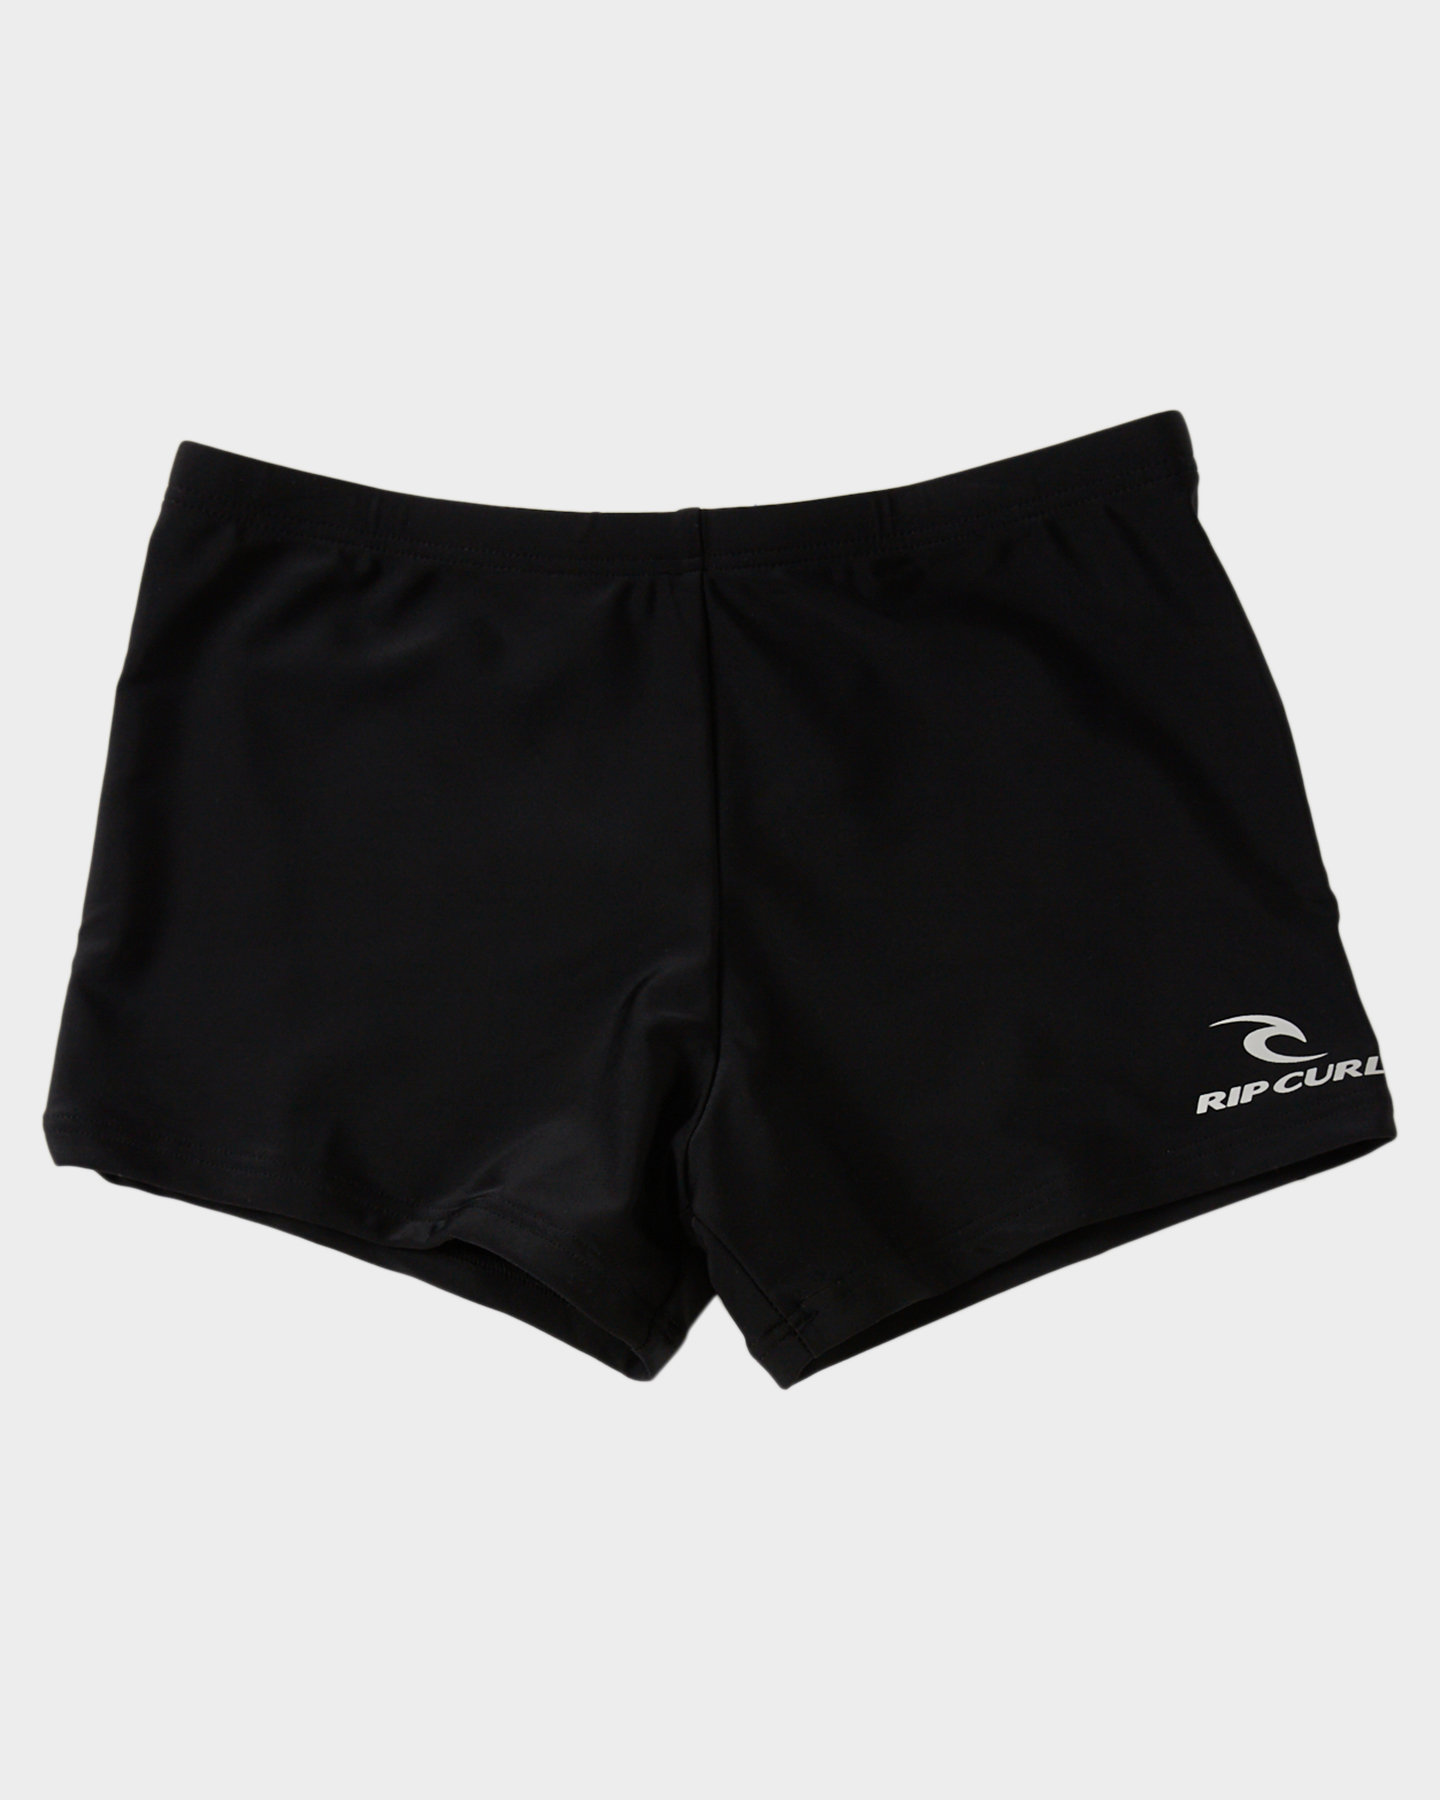 Rip Curl Boys Corp Boyleg Sluggo Swim Shorts - Teens - Black | SurfStitch